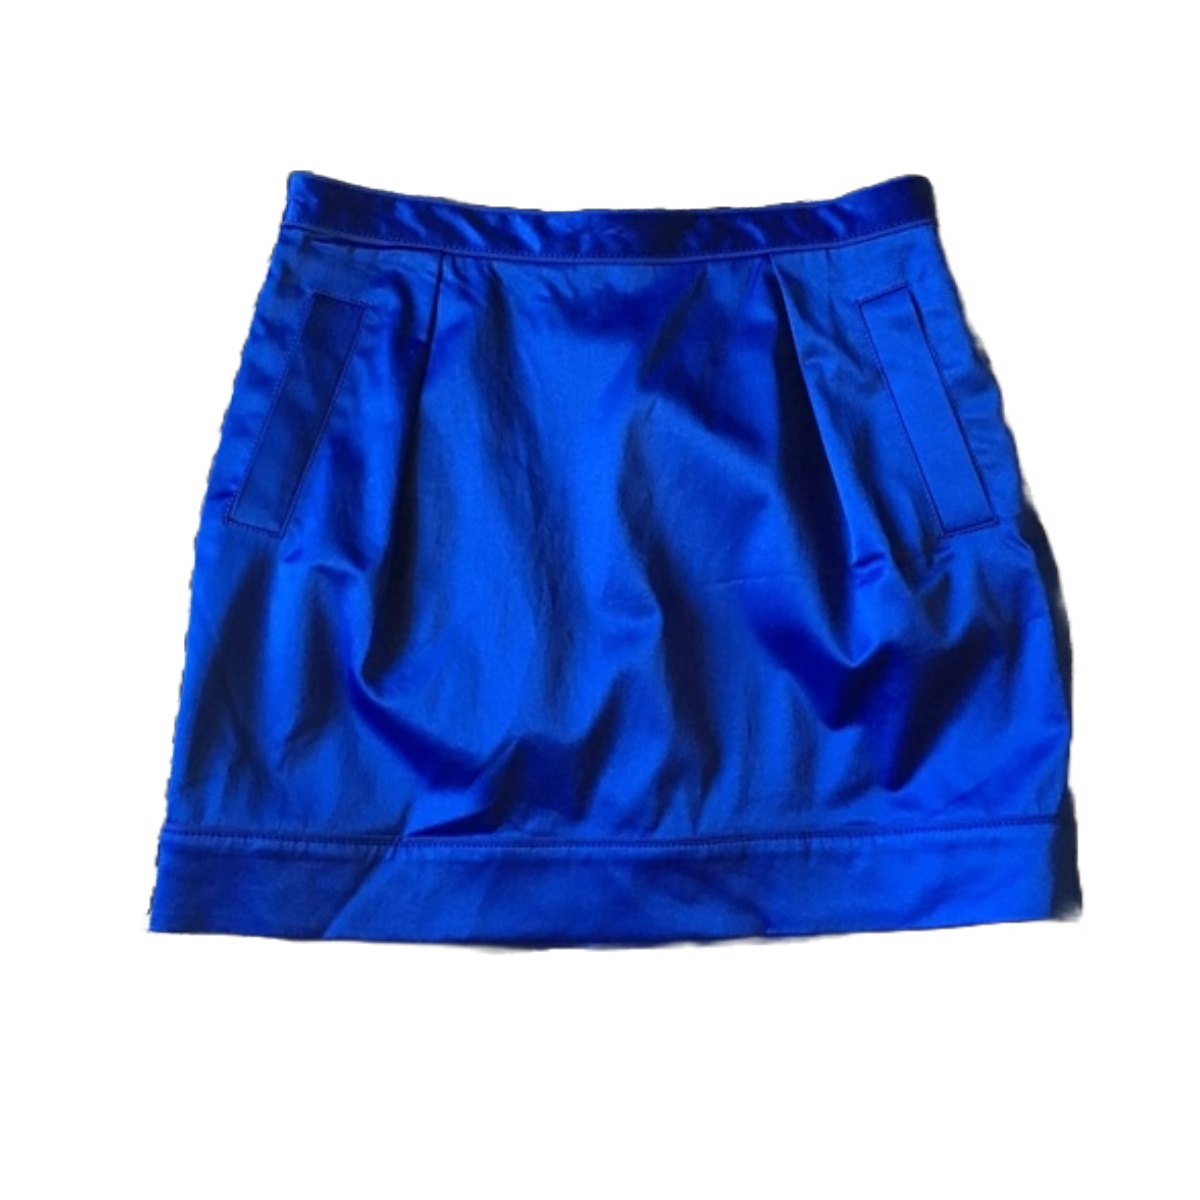 Club Monaco Satin Tulip Skirt in Blue — UFO No More